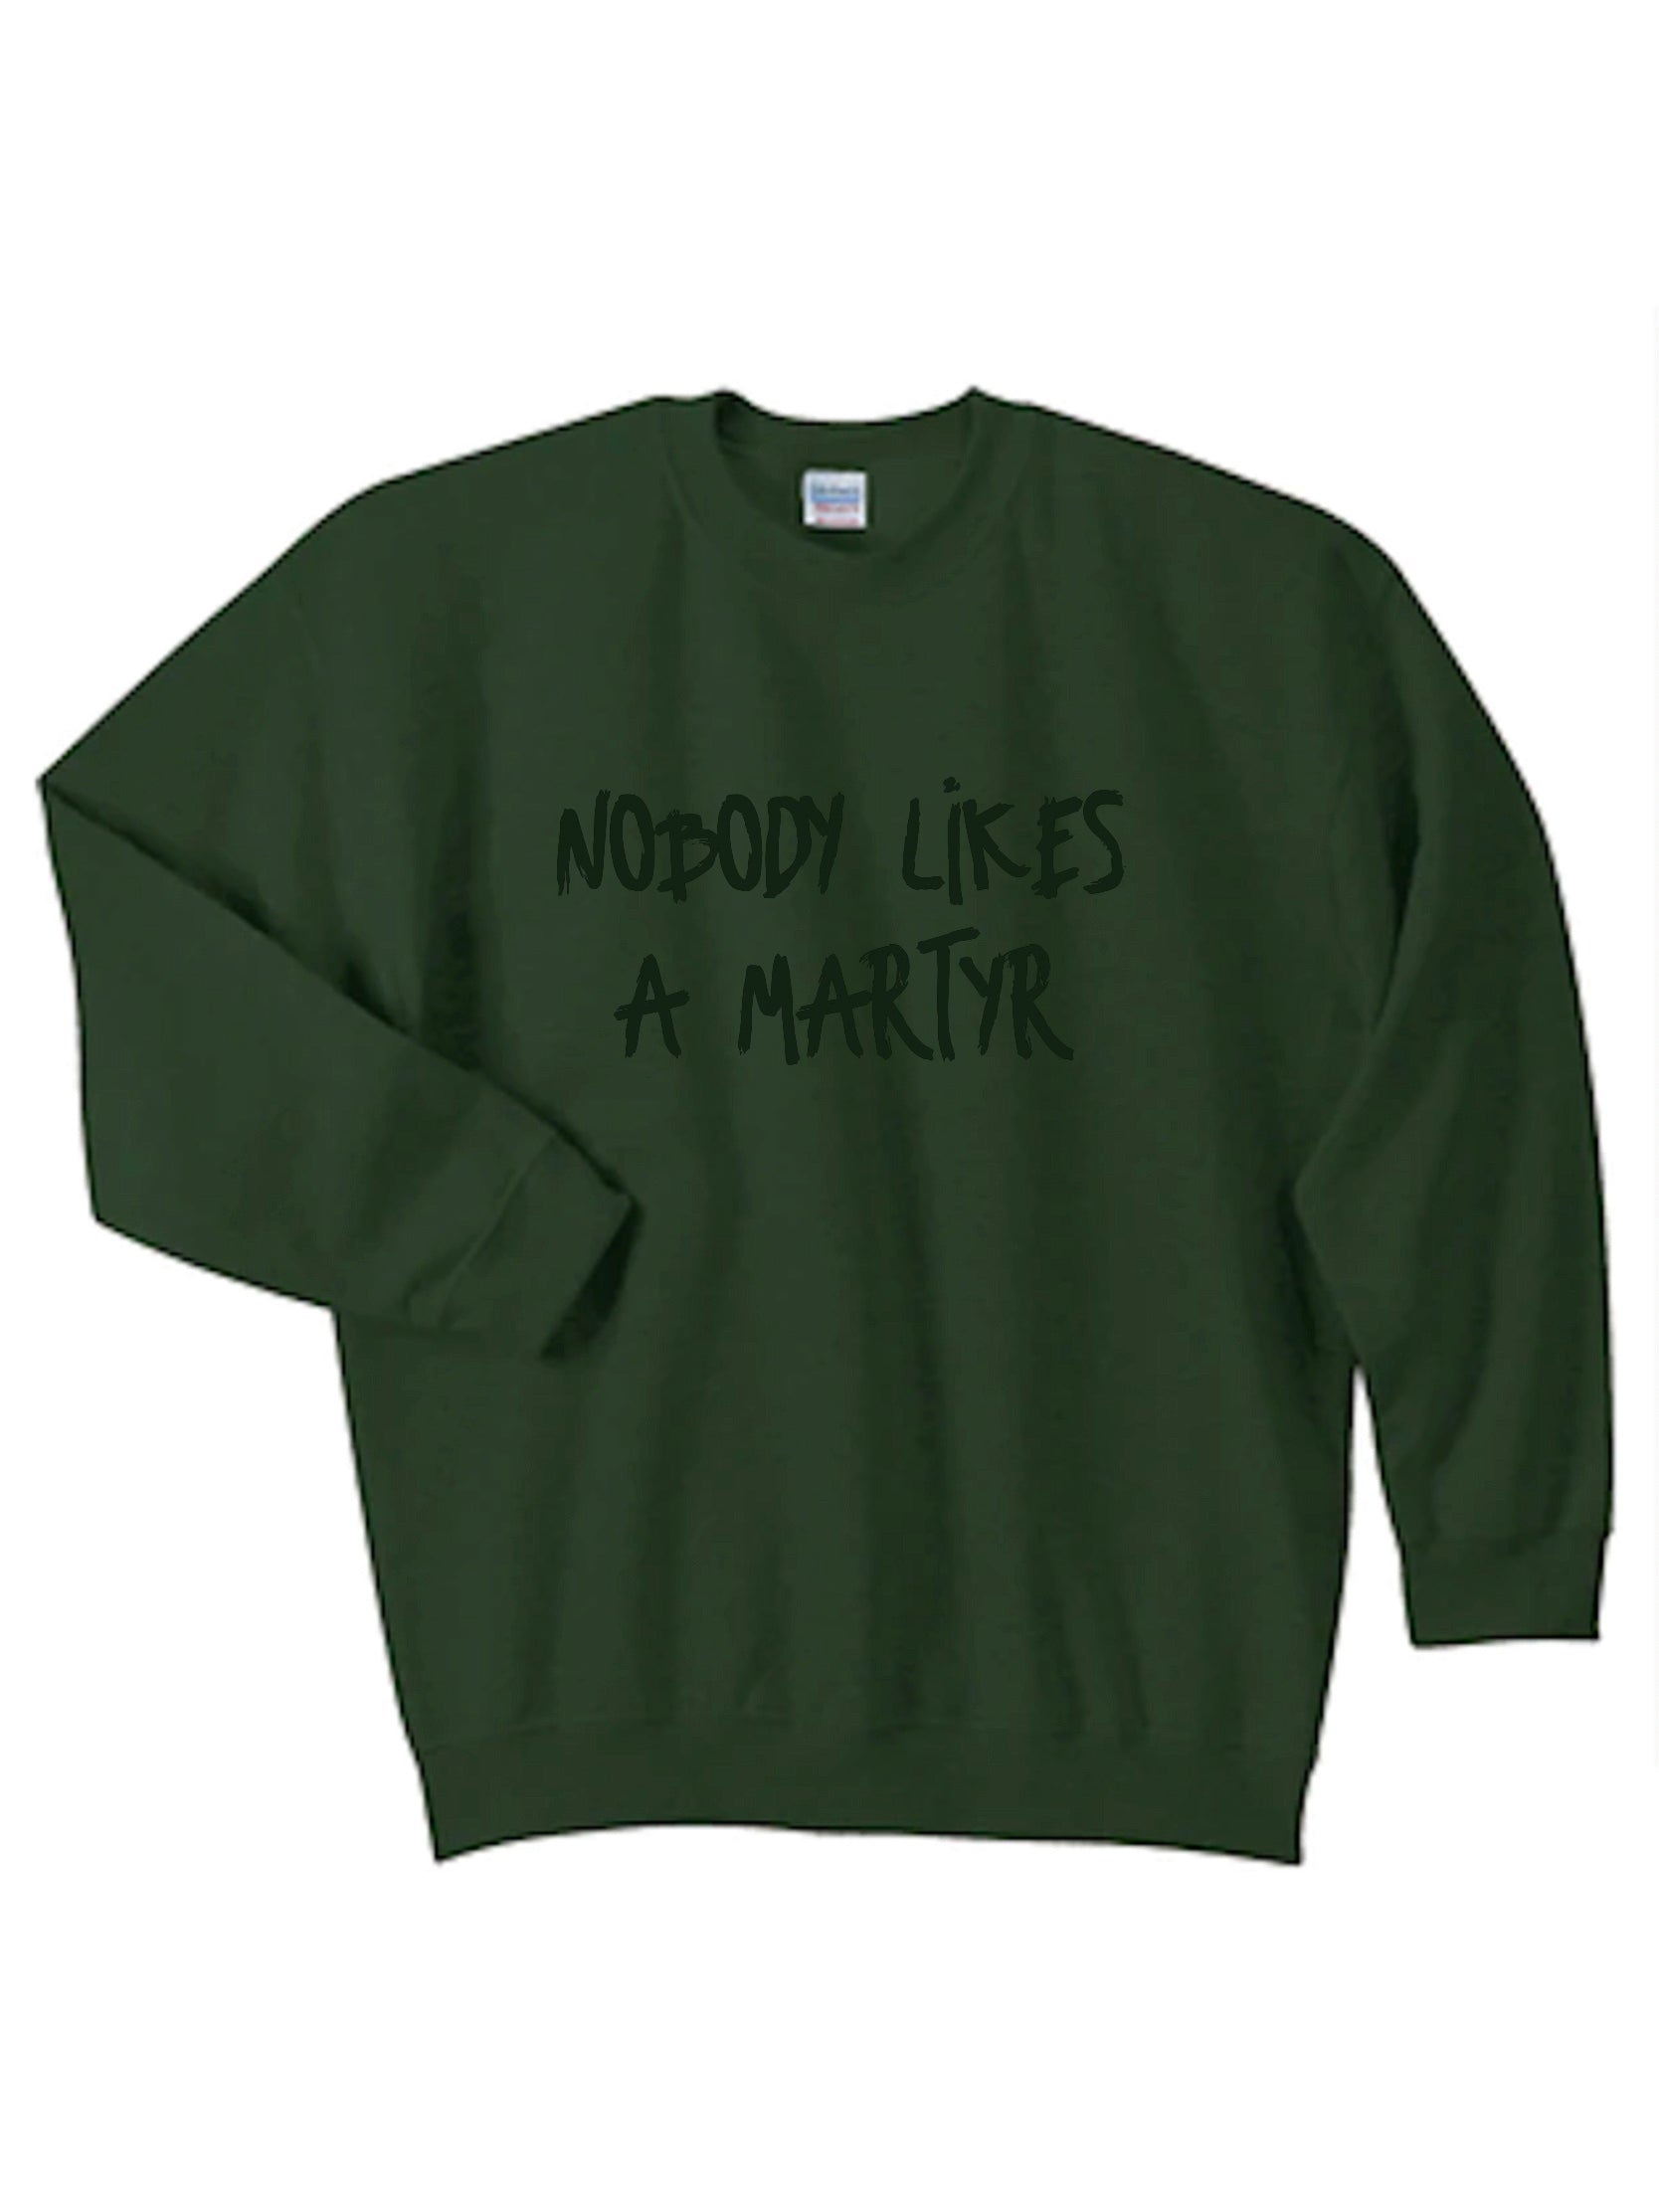 Martyr Sweatshirt | Green